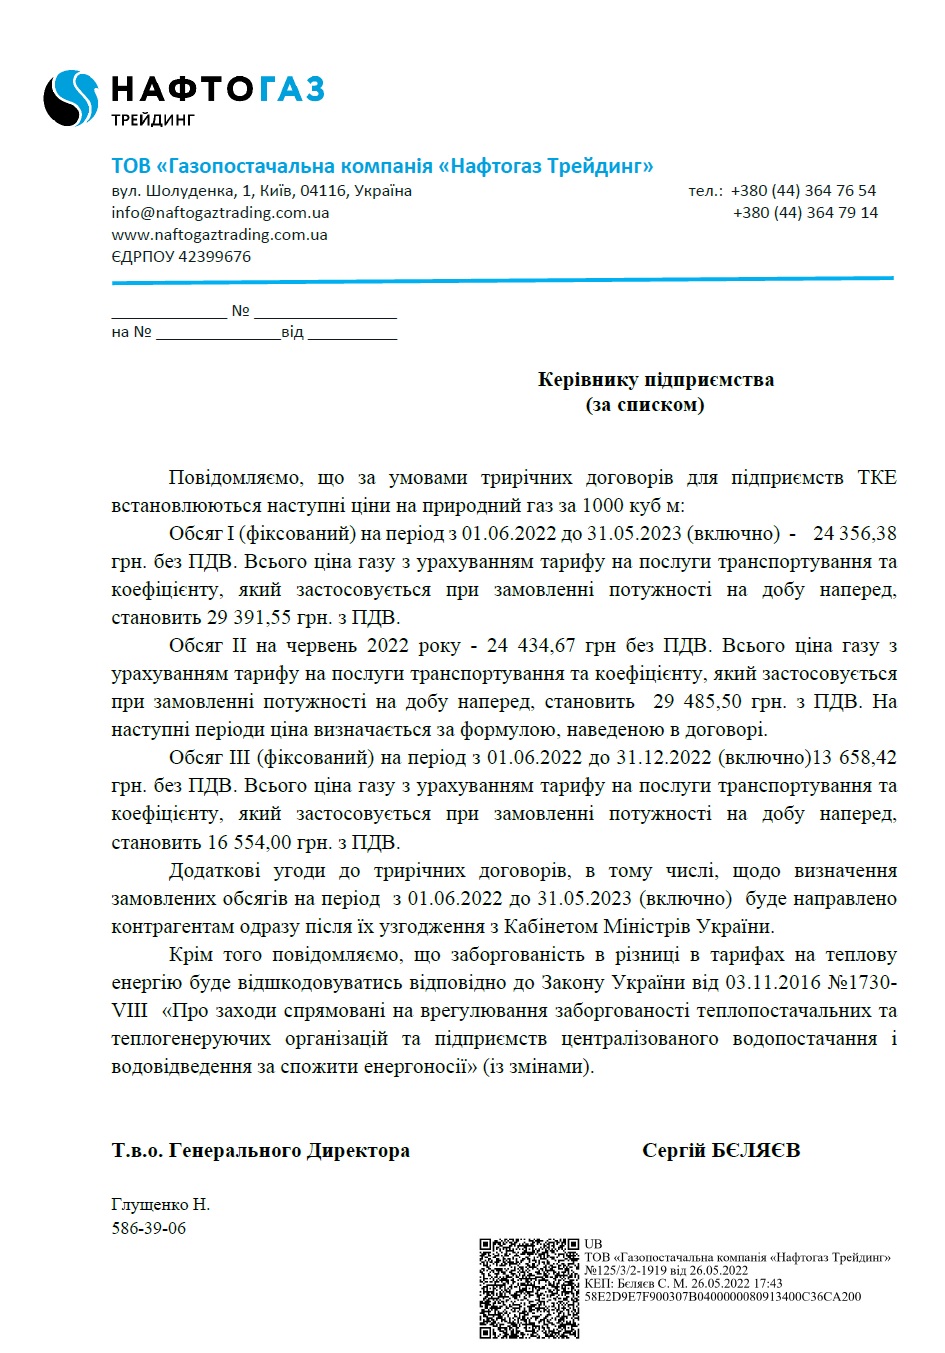 Как вырастут цены на газ и отопление в Украине - письмо Нафтогаза